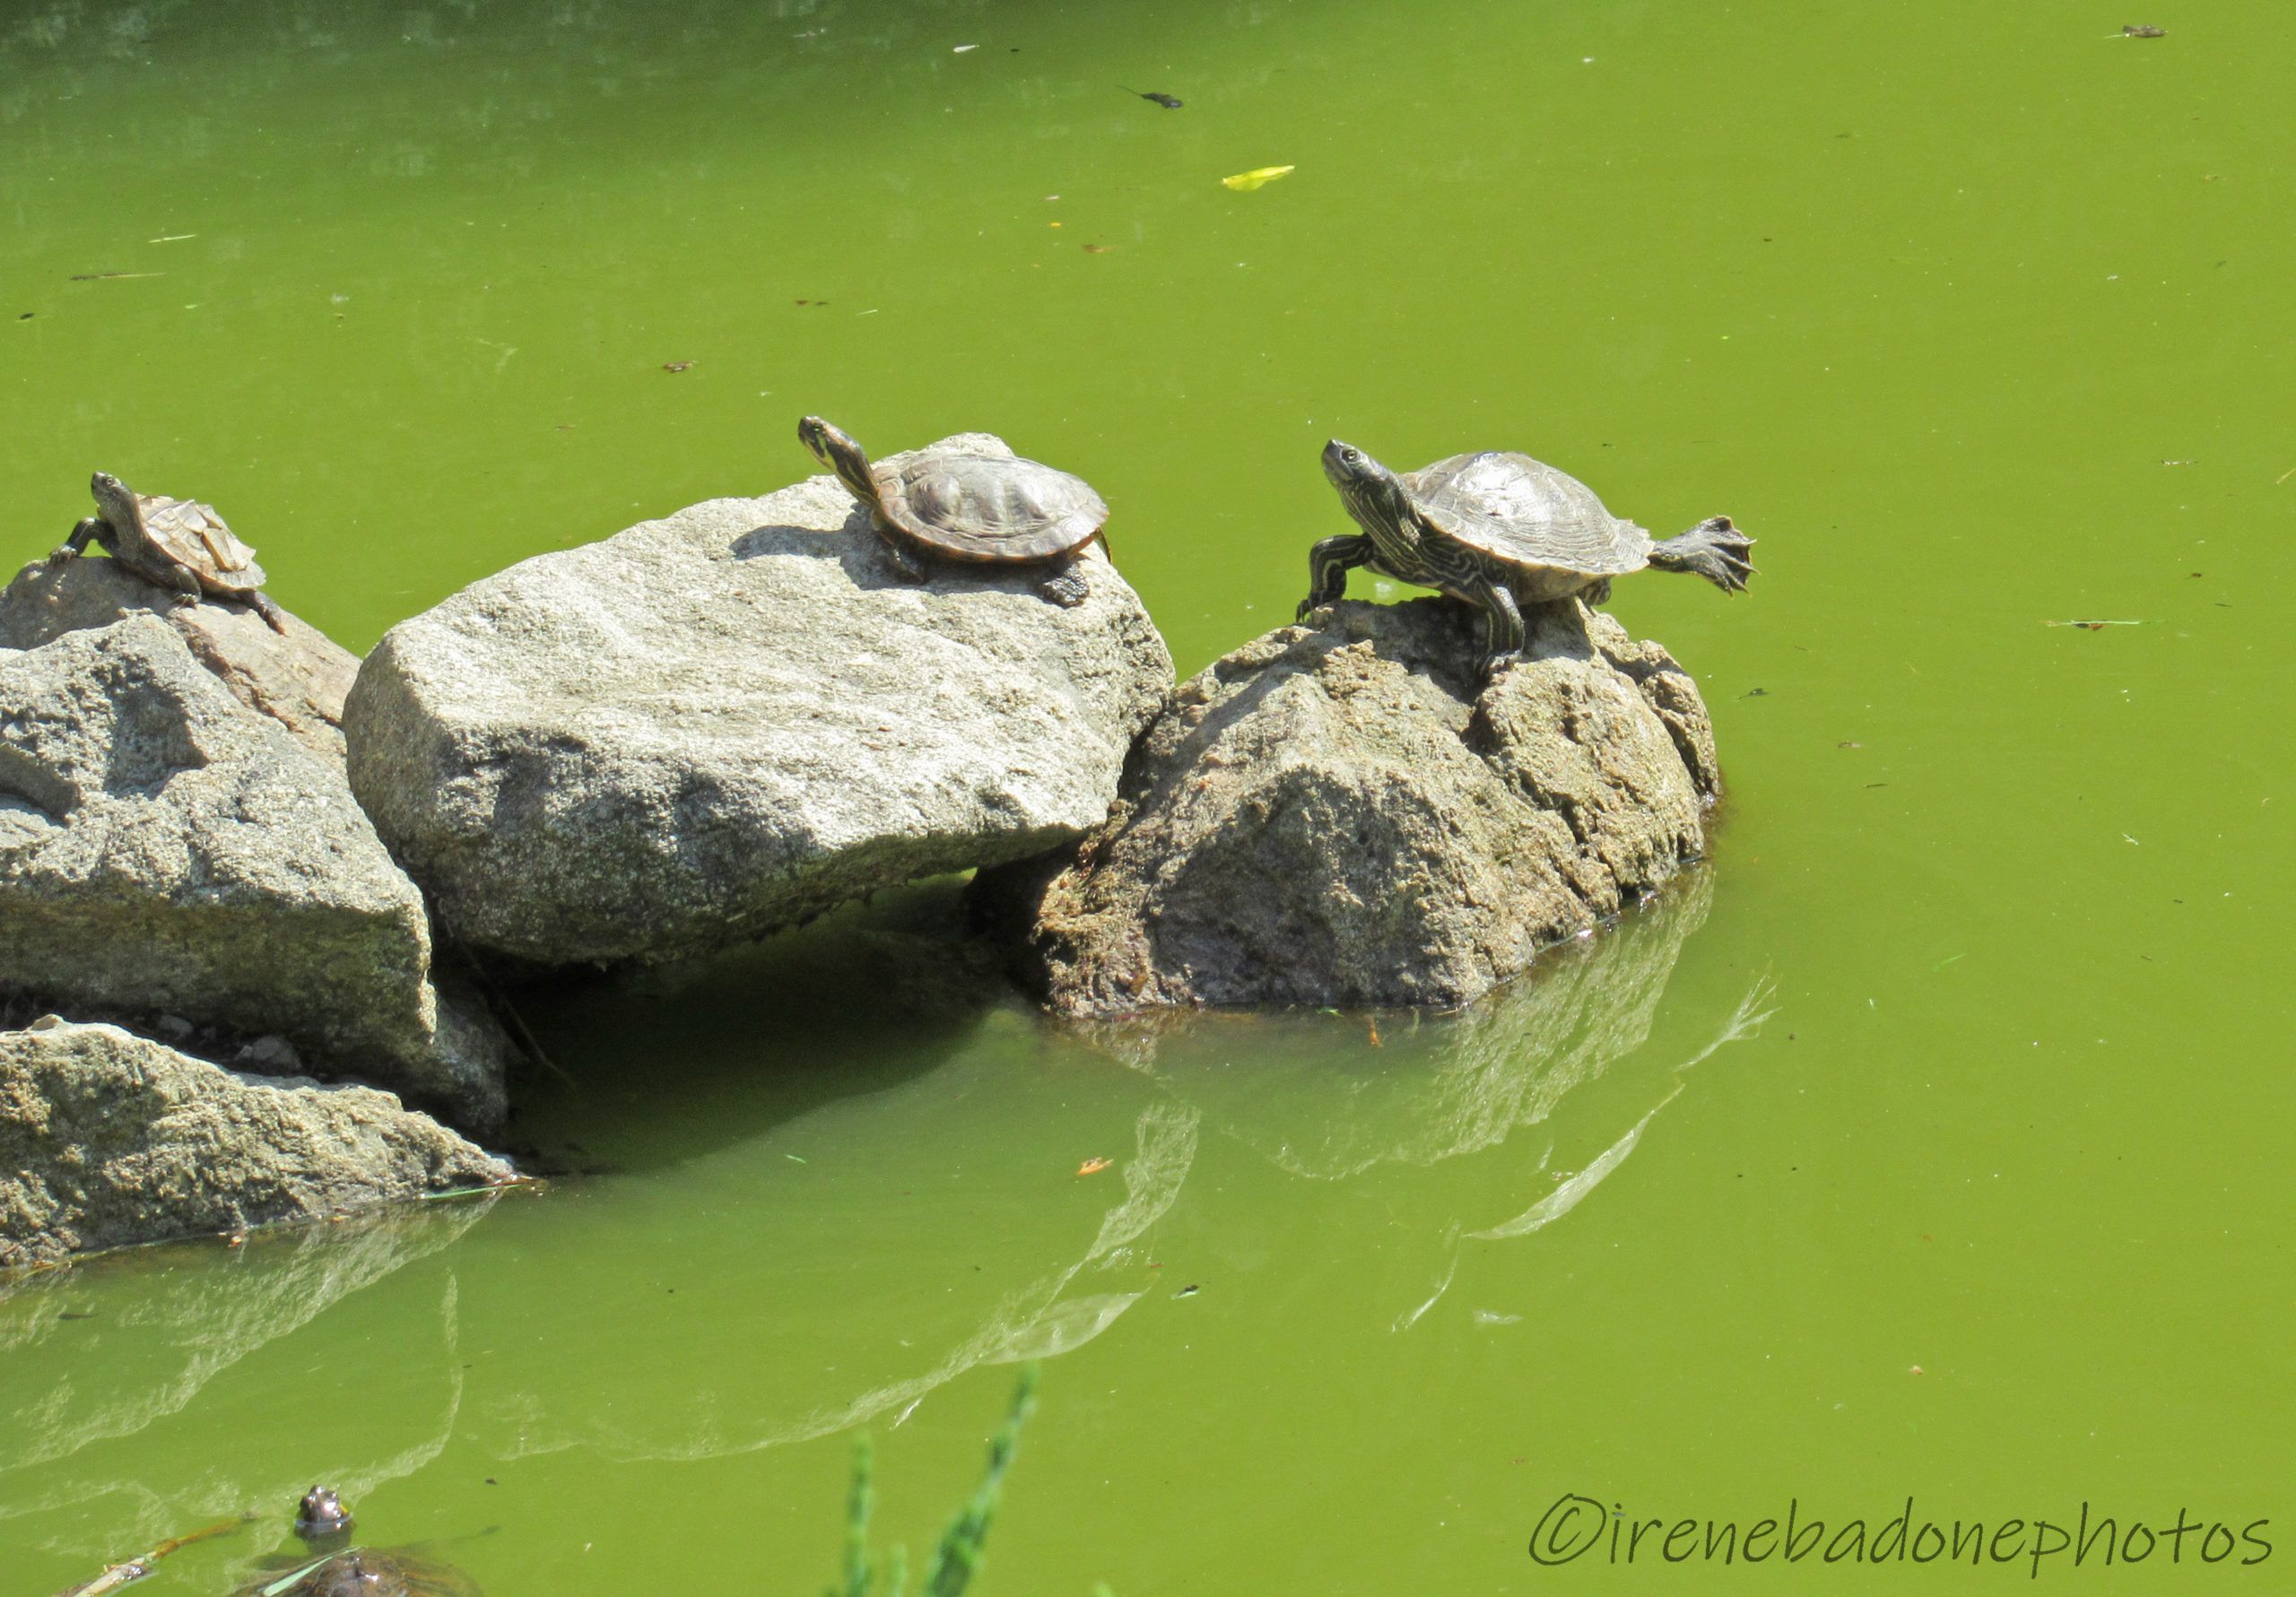 Numerose tartarughe e rane si riproducono naturalmente nel laghetto